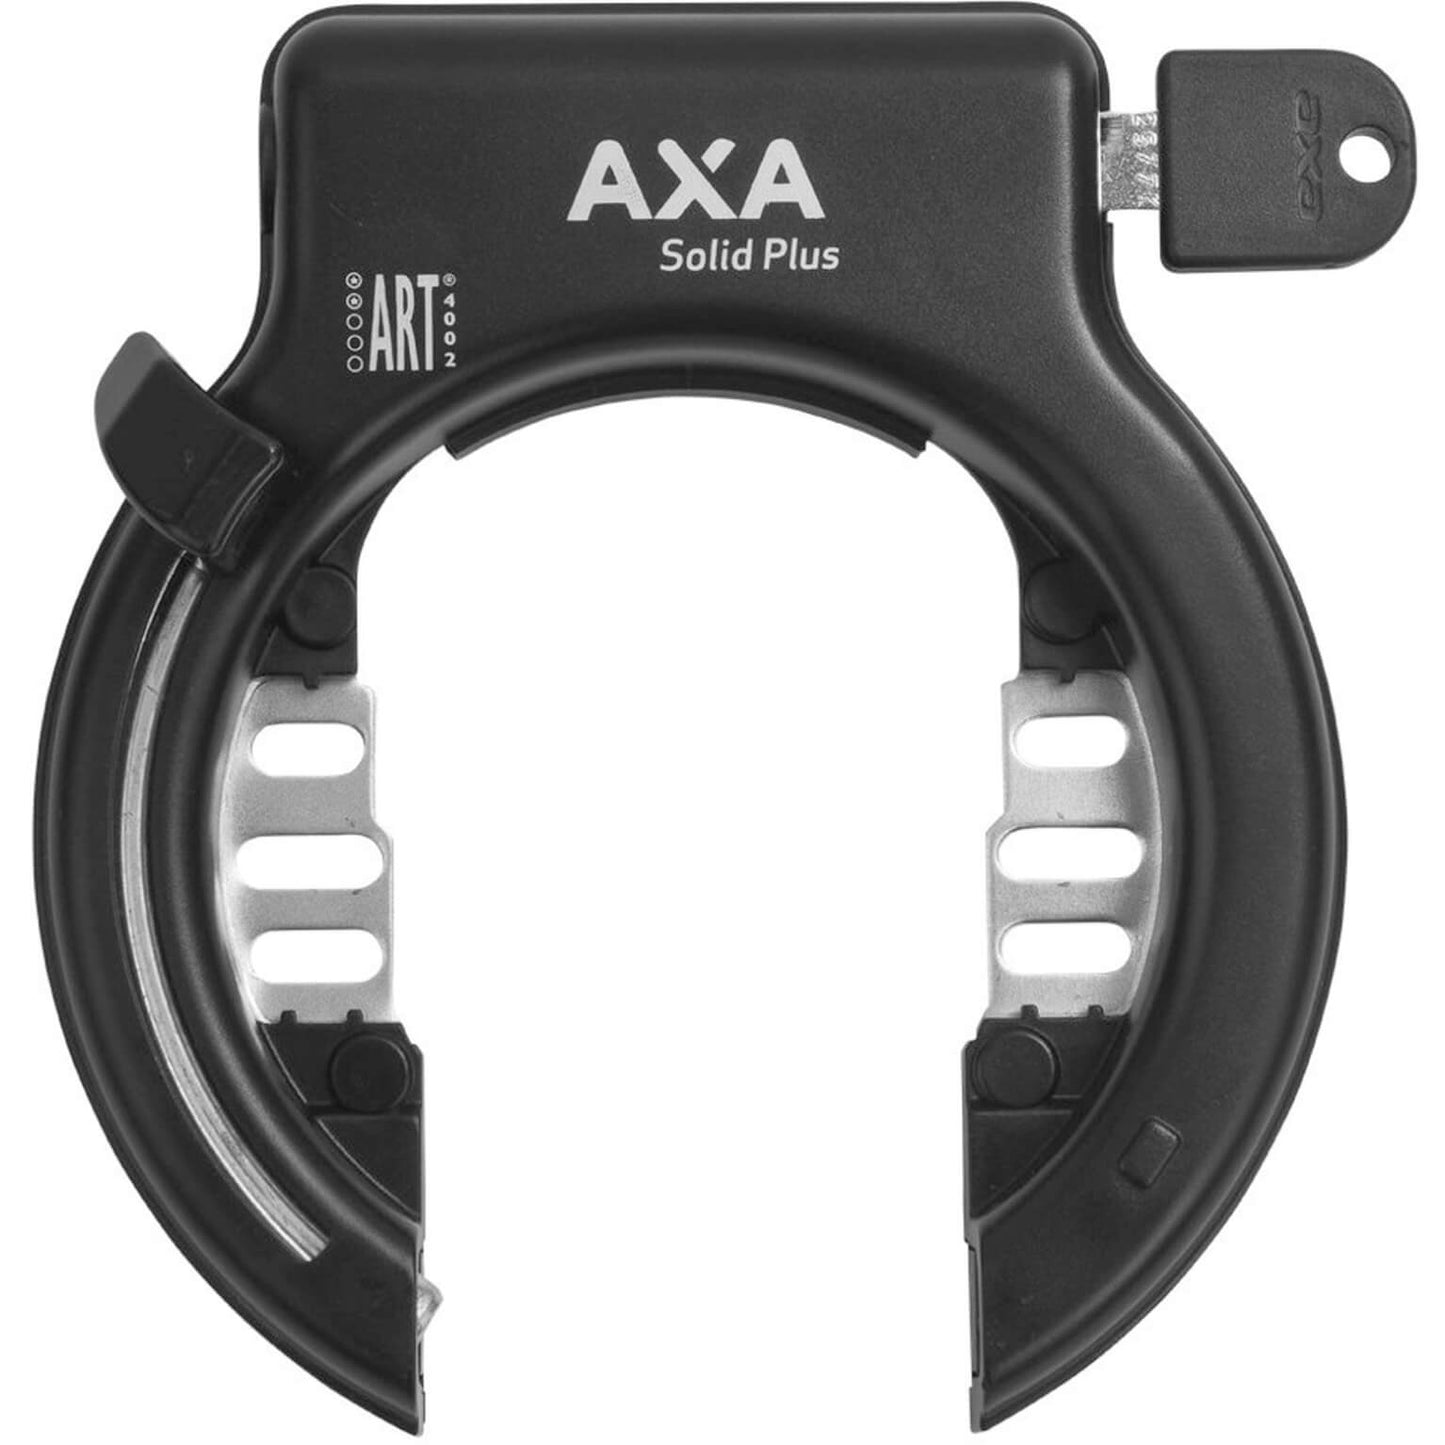 Axa Solid Plus zwart ringslot - ART2, 11 15 beschermingsniveau